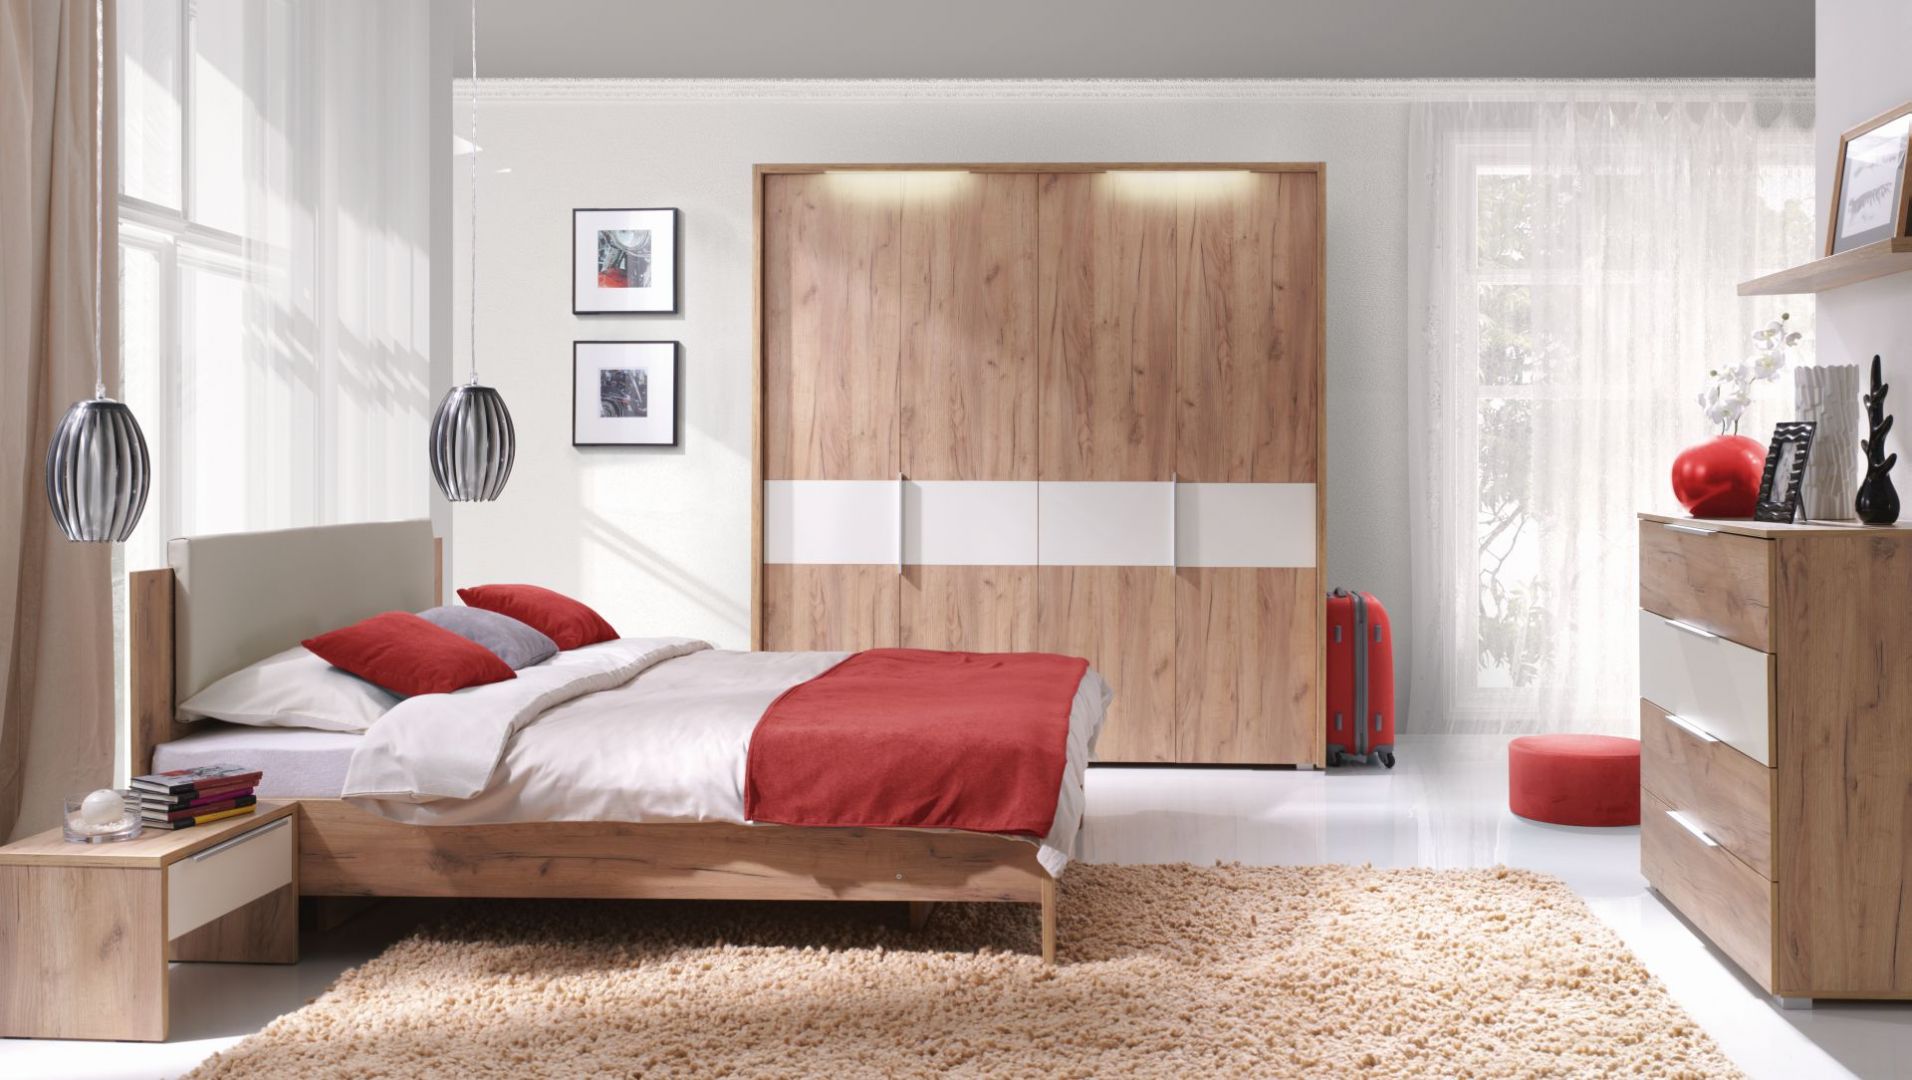 Sypialnia Melody doskonale sprawdzi się we wnętrzach w stylu eko. Fot. Wajnert Meble